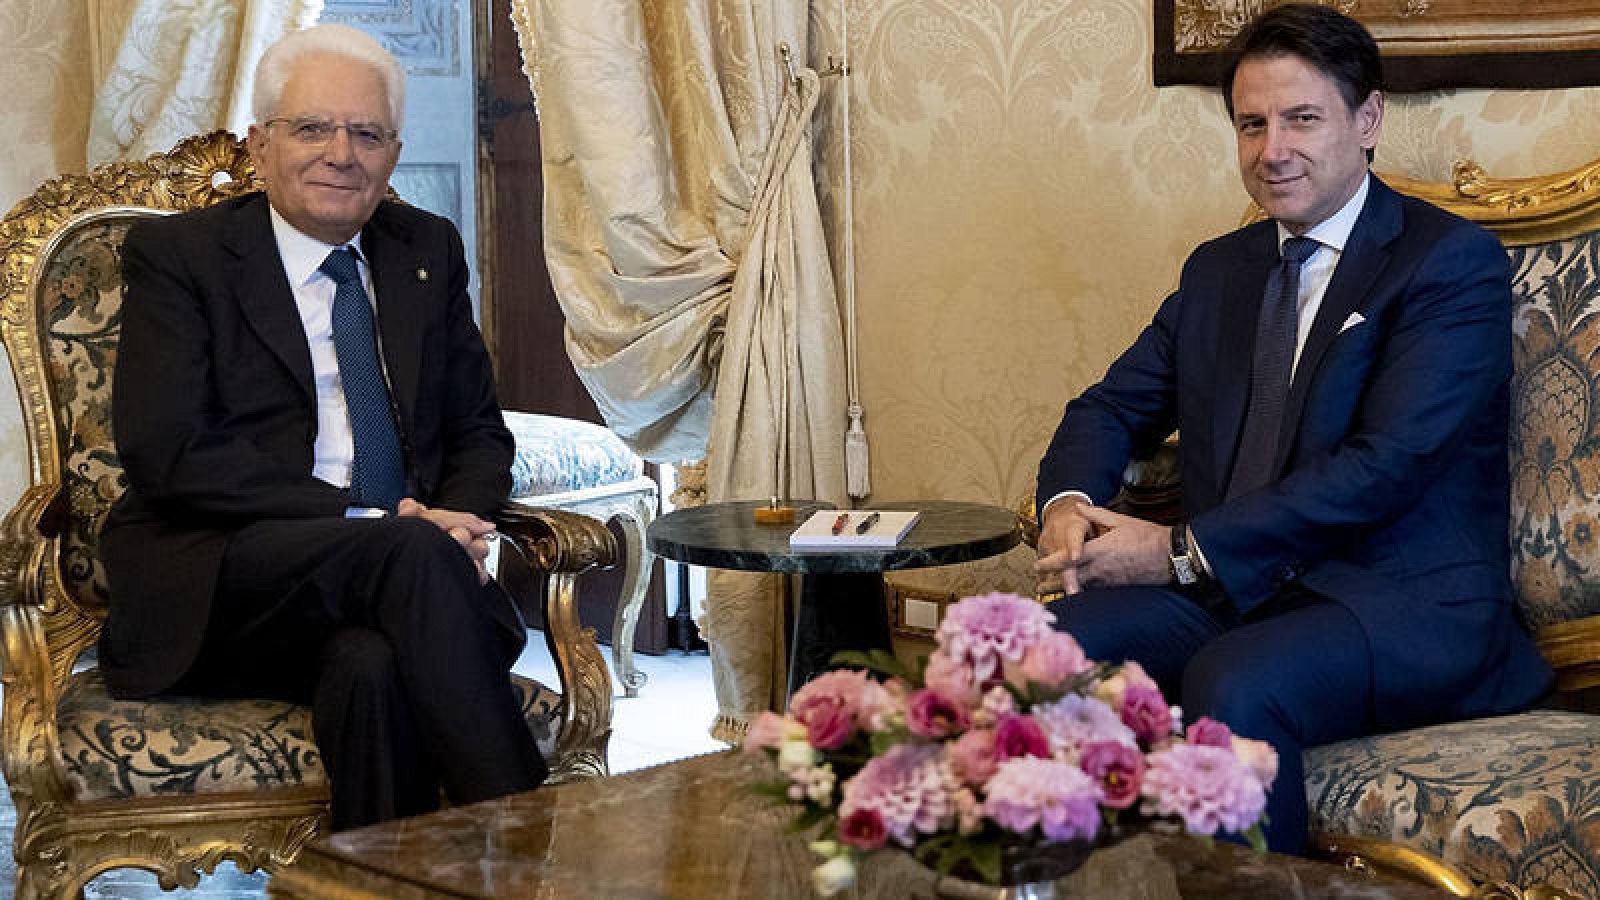 El presidente italiano encarga a Giuseppe Conte la formación del nuevo gobierno de coalición de M5S y PD